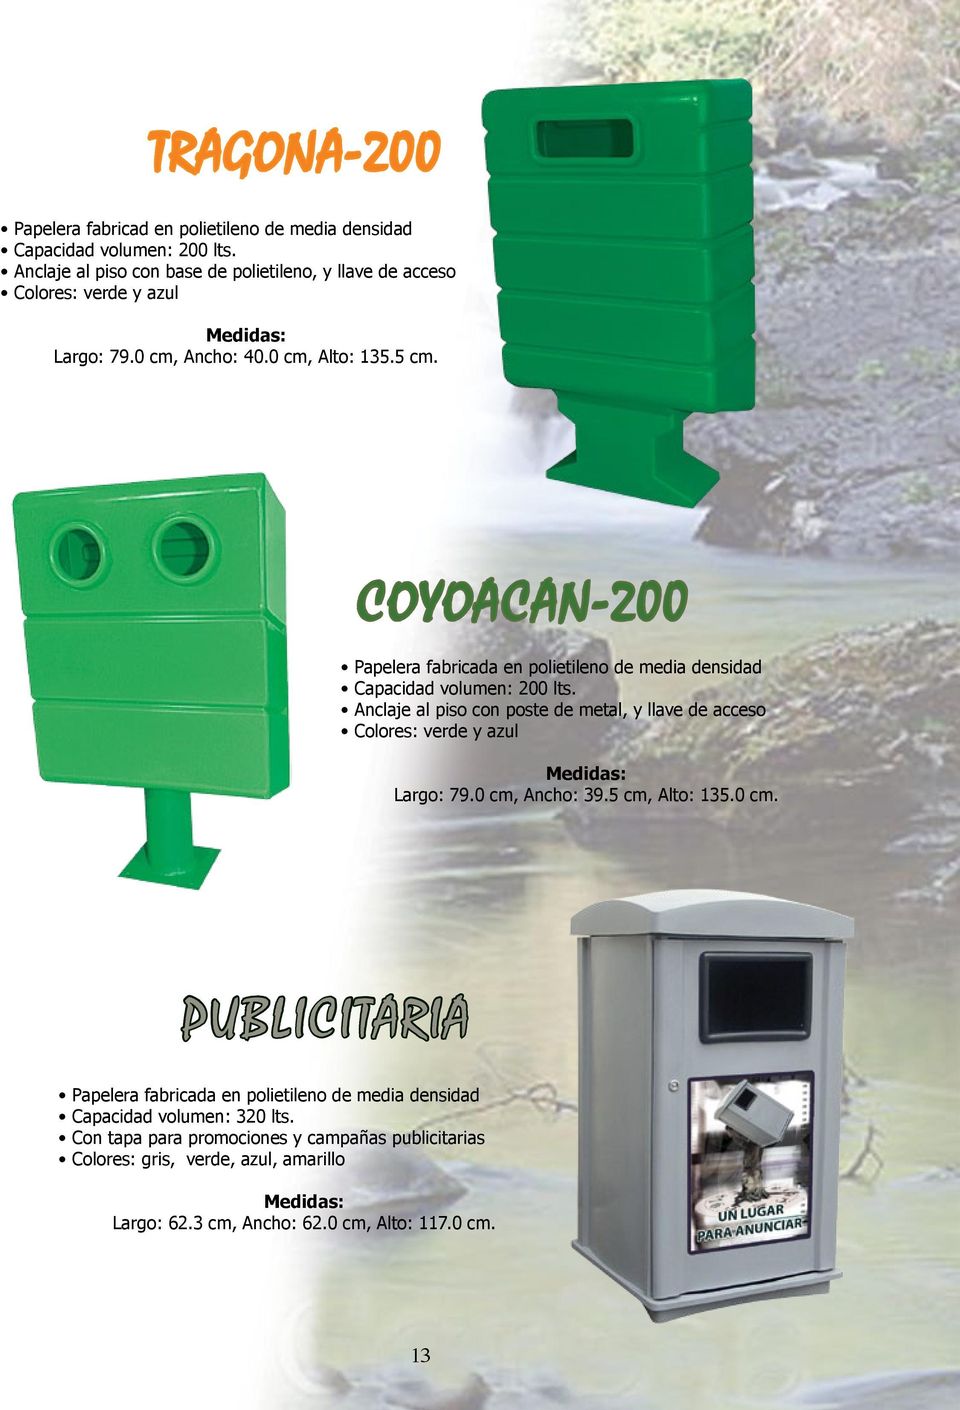 COYOACAN-200 Papelera fabricada en polietileno de media densidad Capacidad volumen: 200 lts.